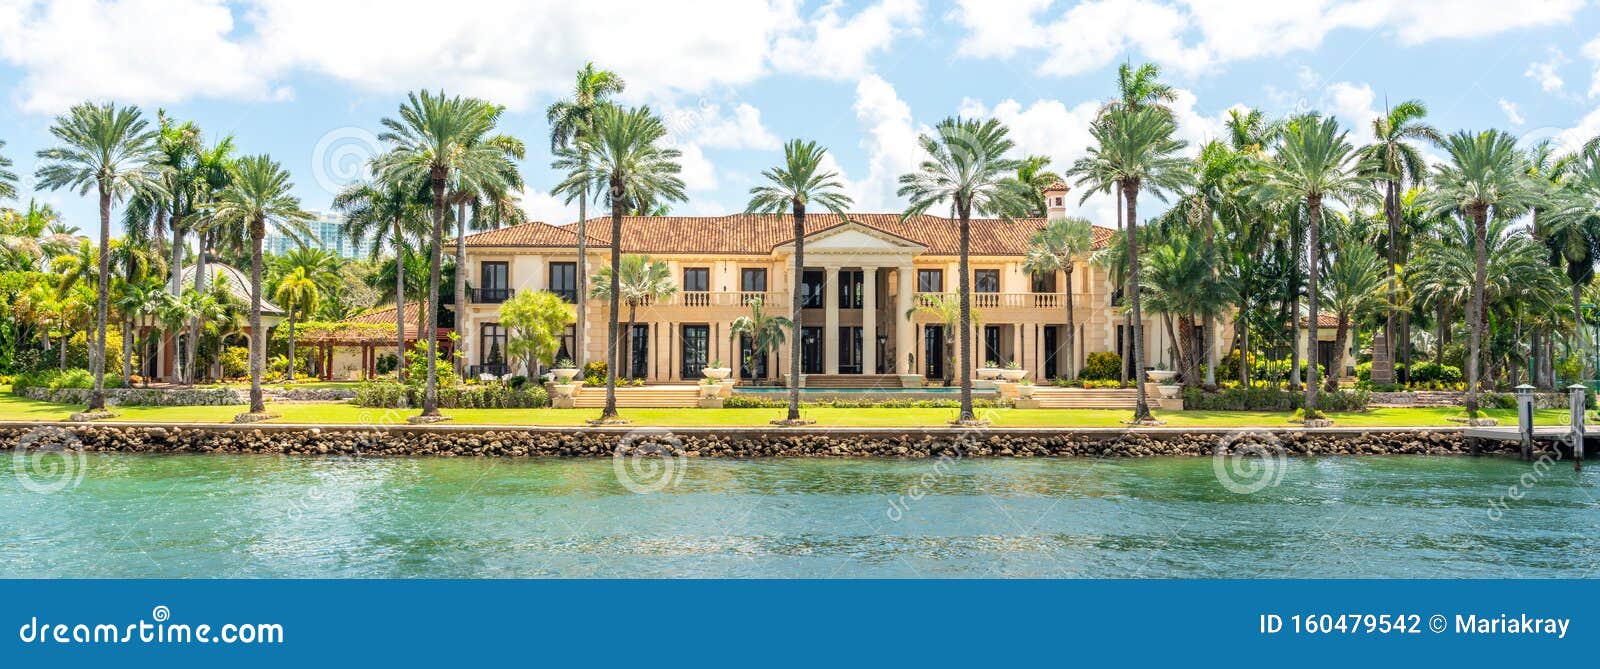 luxurious mansion in miami beach, florida, usa